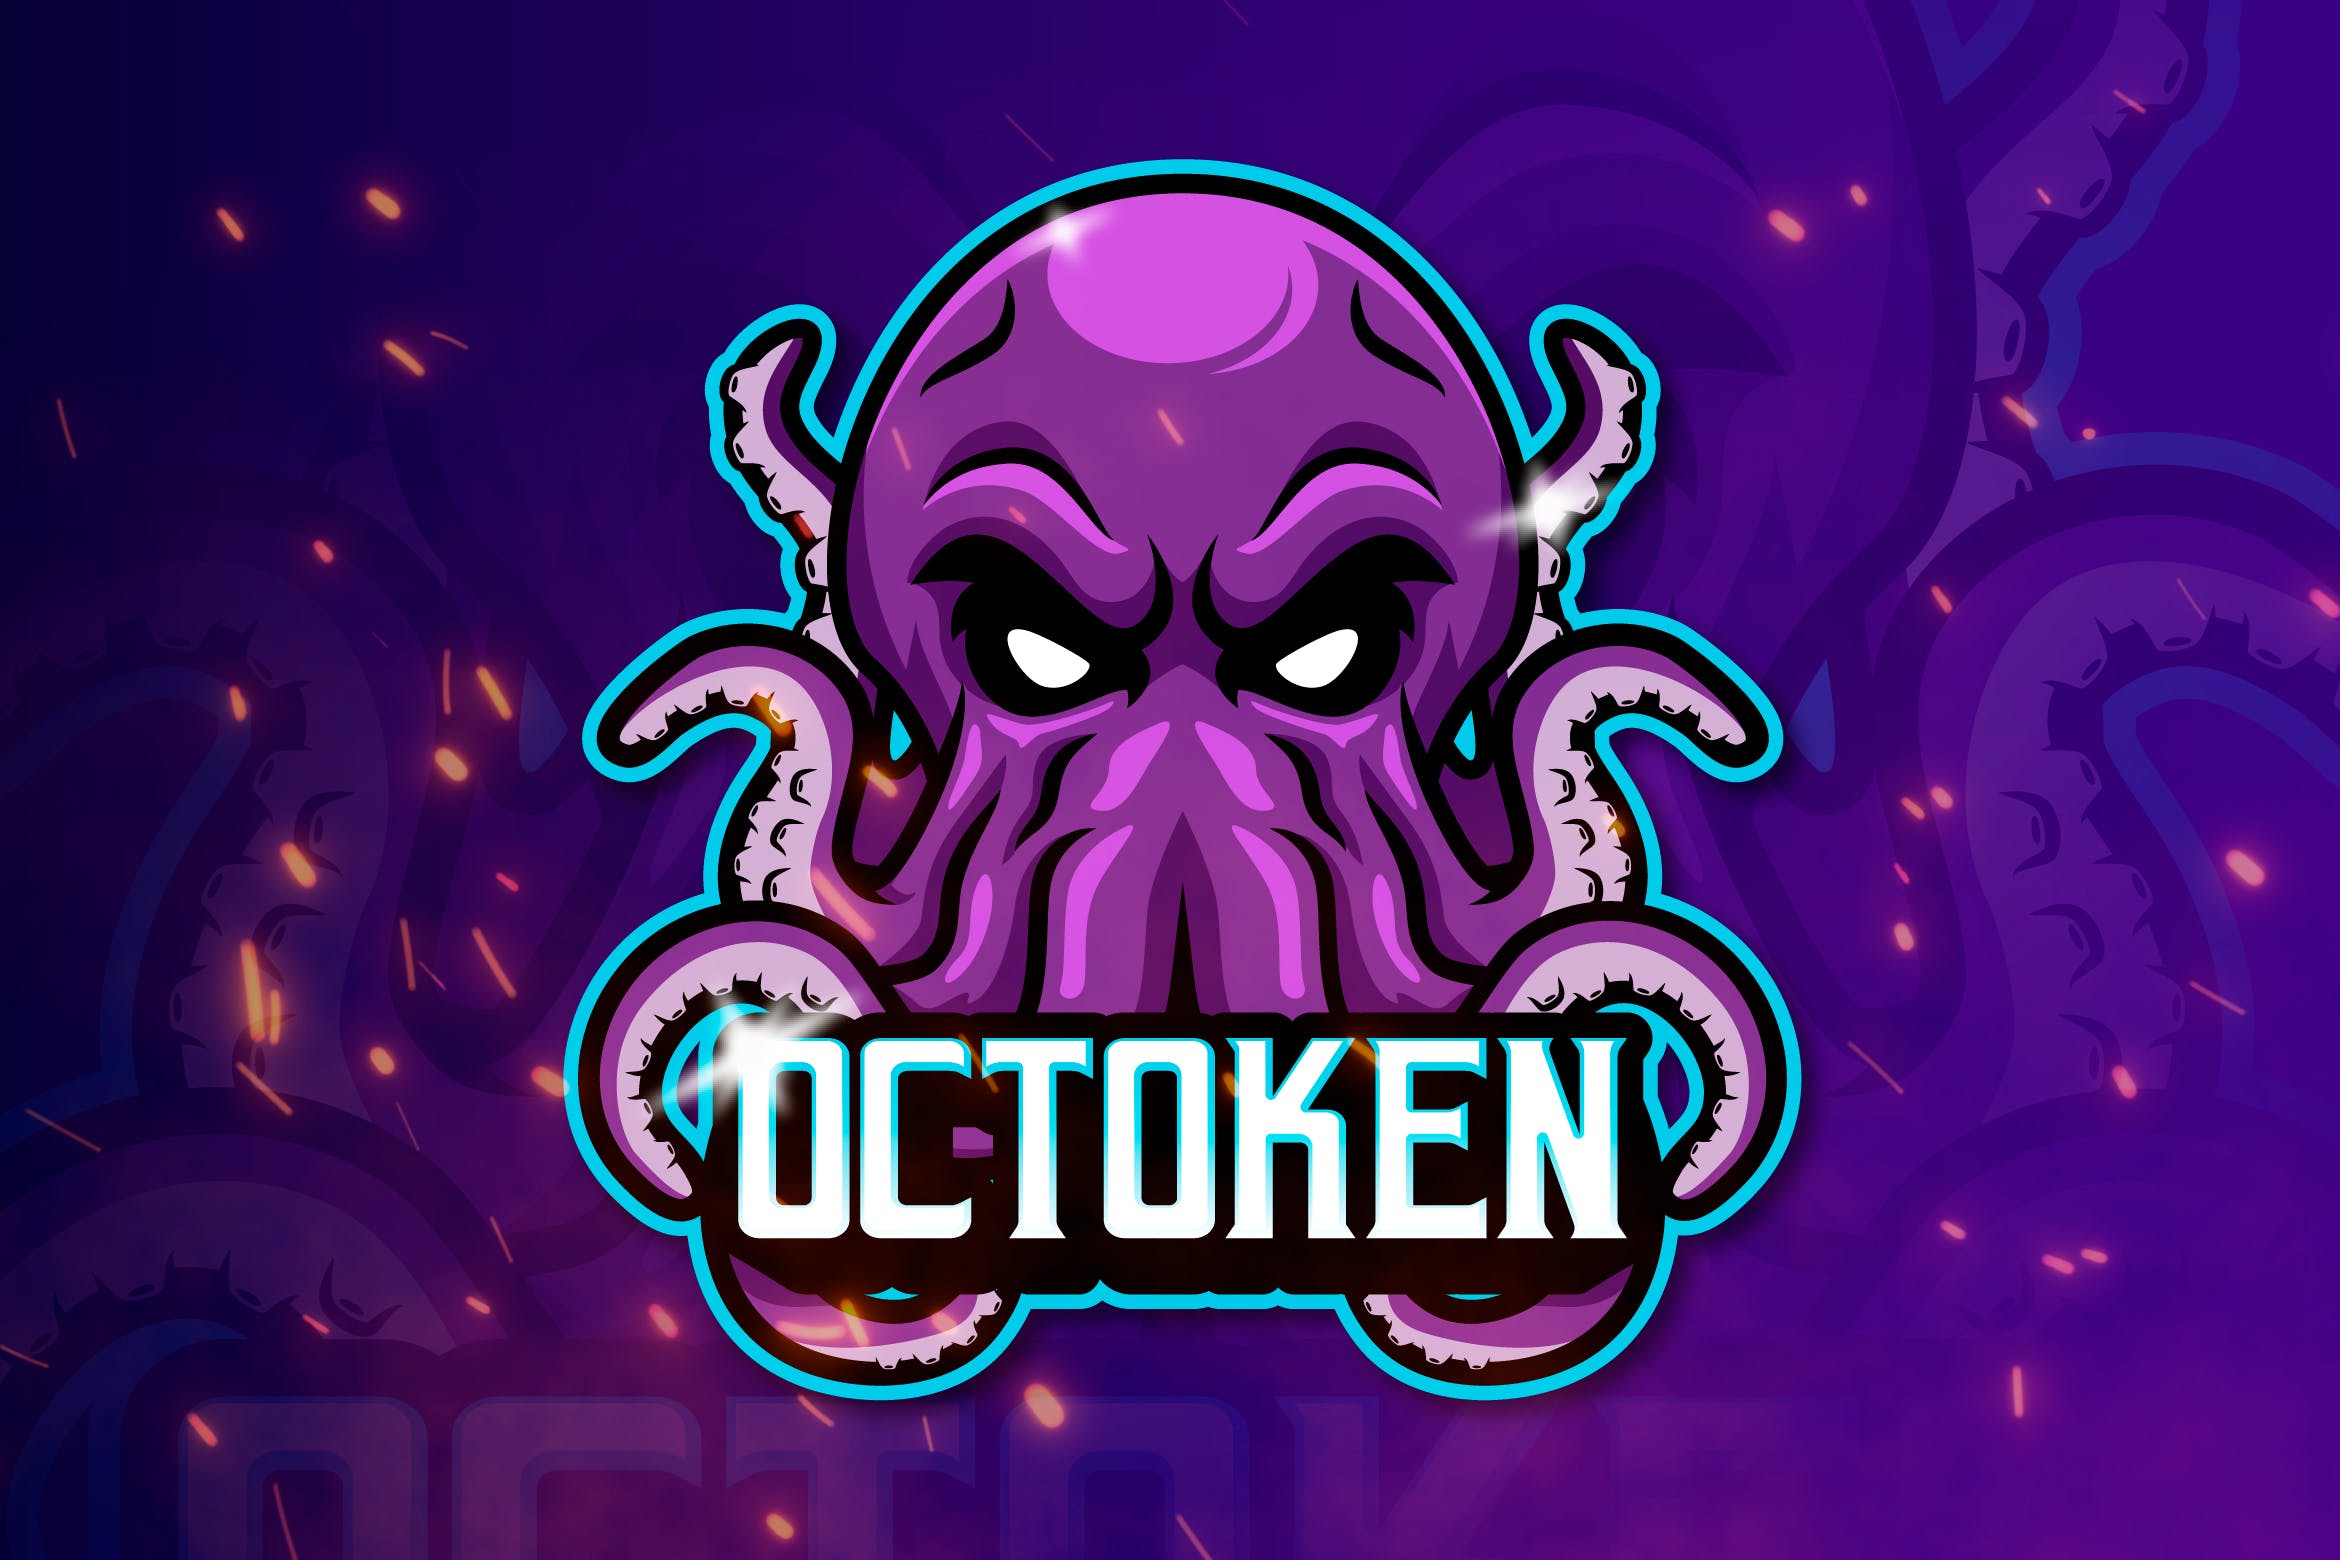 章鱼电子竞技吉祥物队徽Logo标志设计模板 OCTOKEN -Mascot & Esports Logo插图